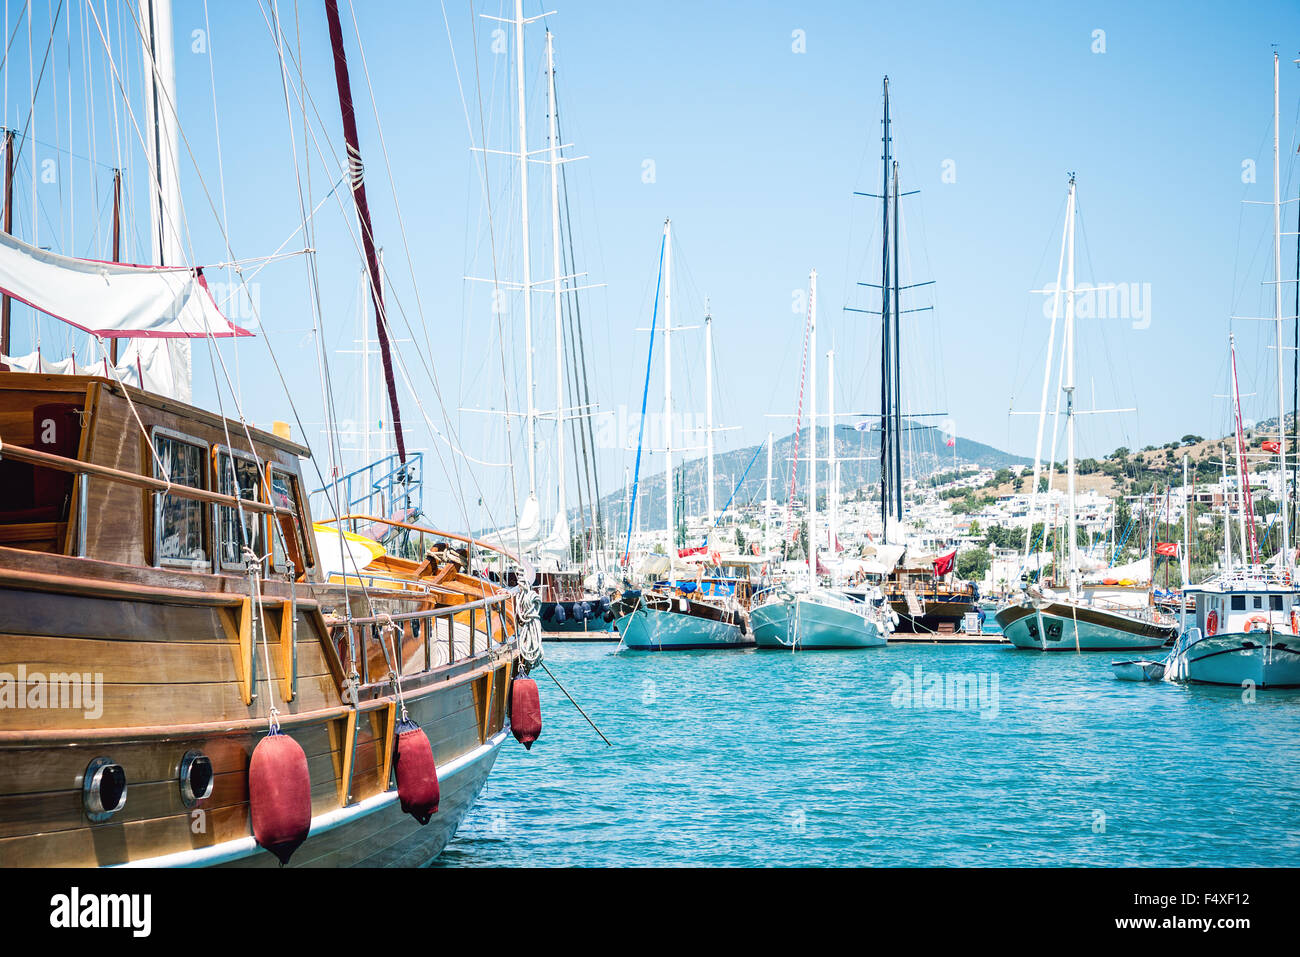 Marina with docked yachts at sunny day in Turkey Stock Photo